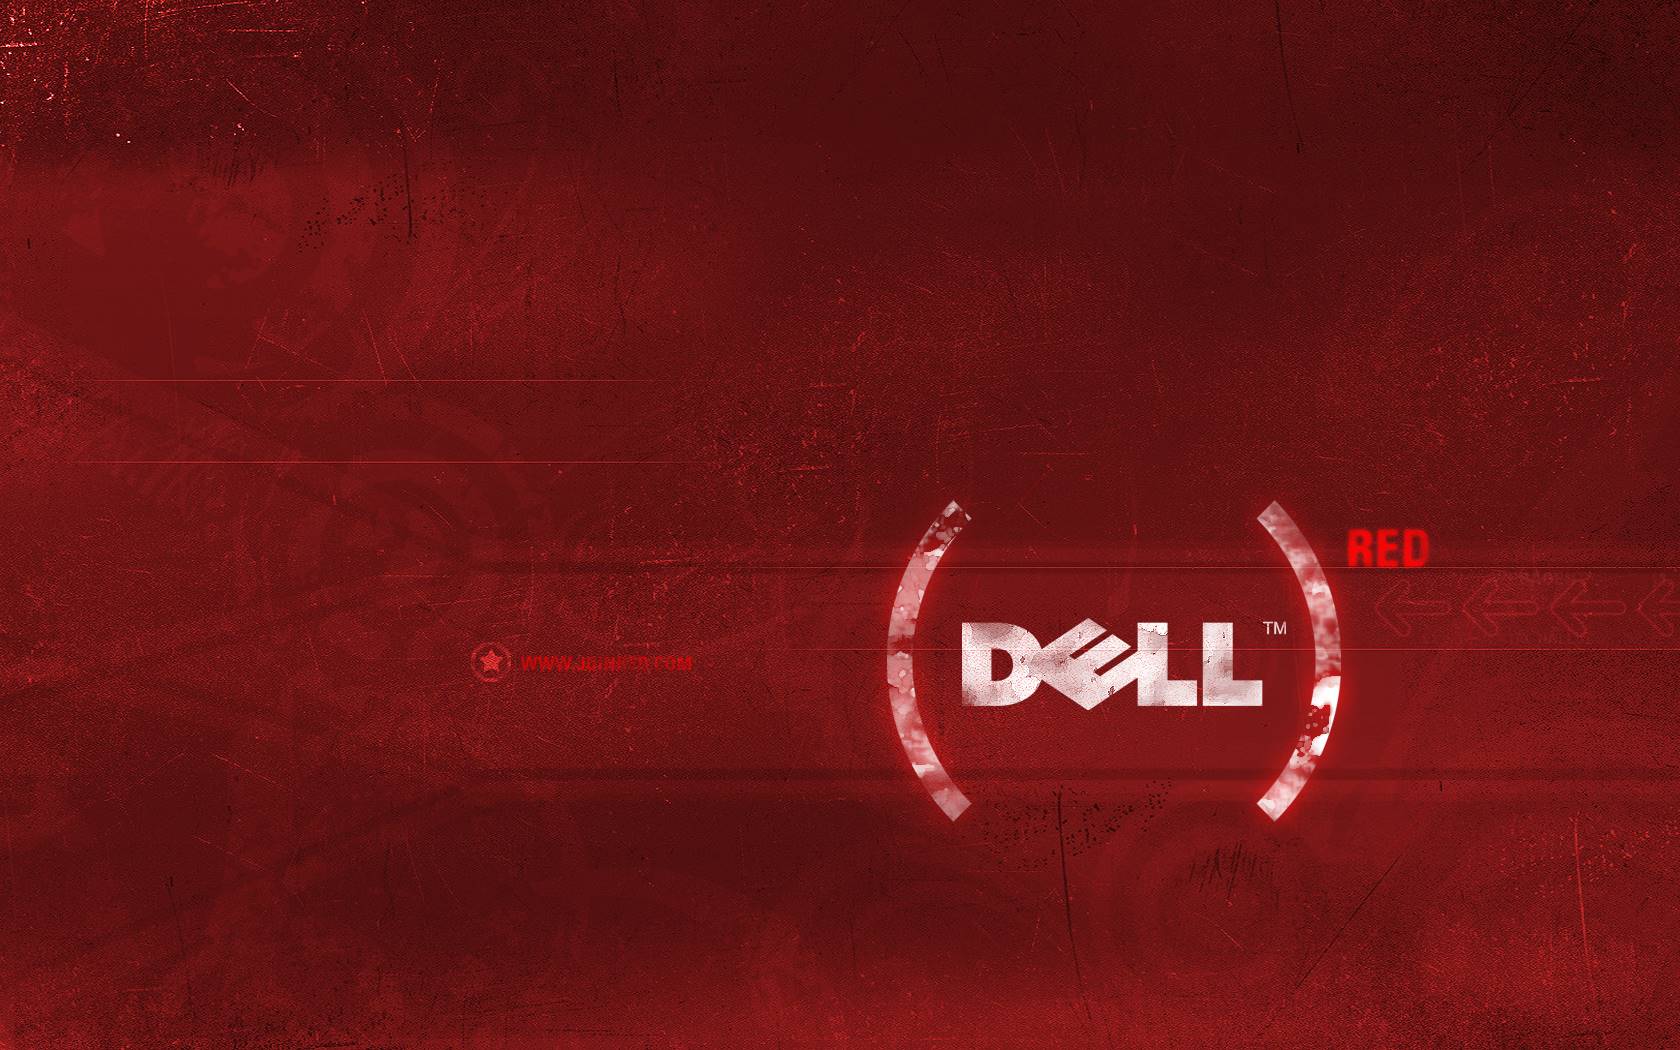  Dell Hintergrundbild 1680x1050. Dell Rot 2 Hintergrundbilder. Dell Rot 2 frei fotos